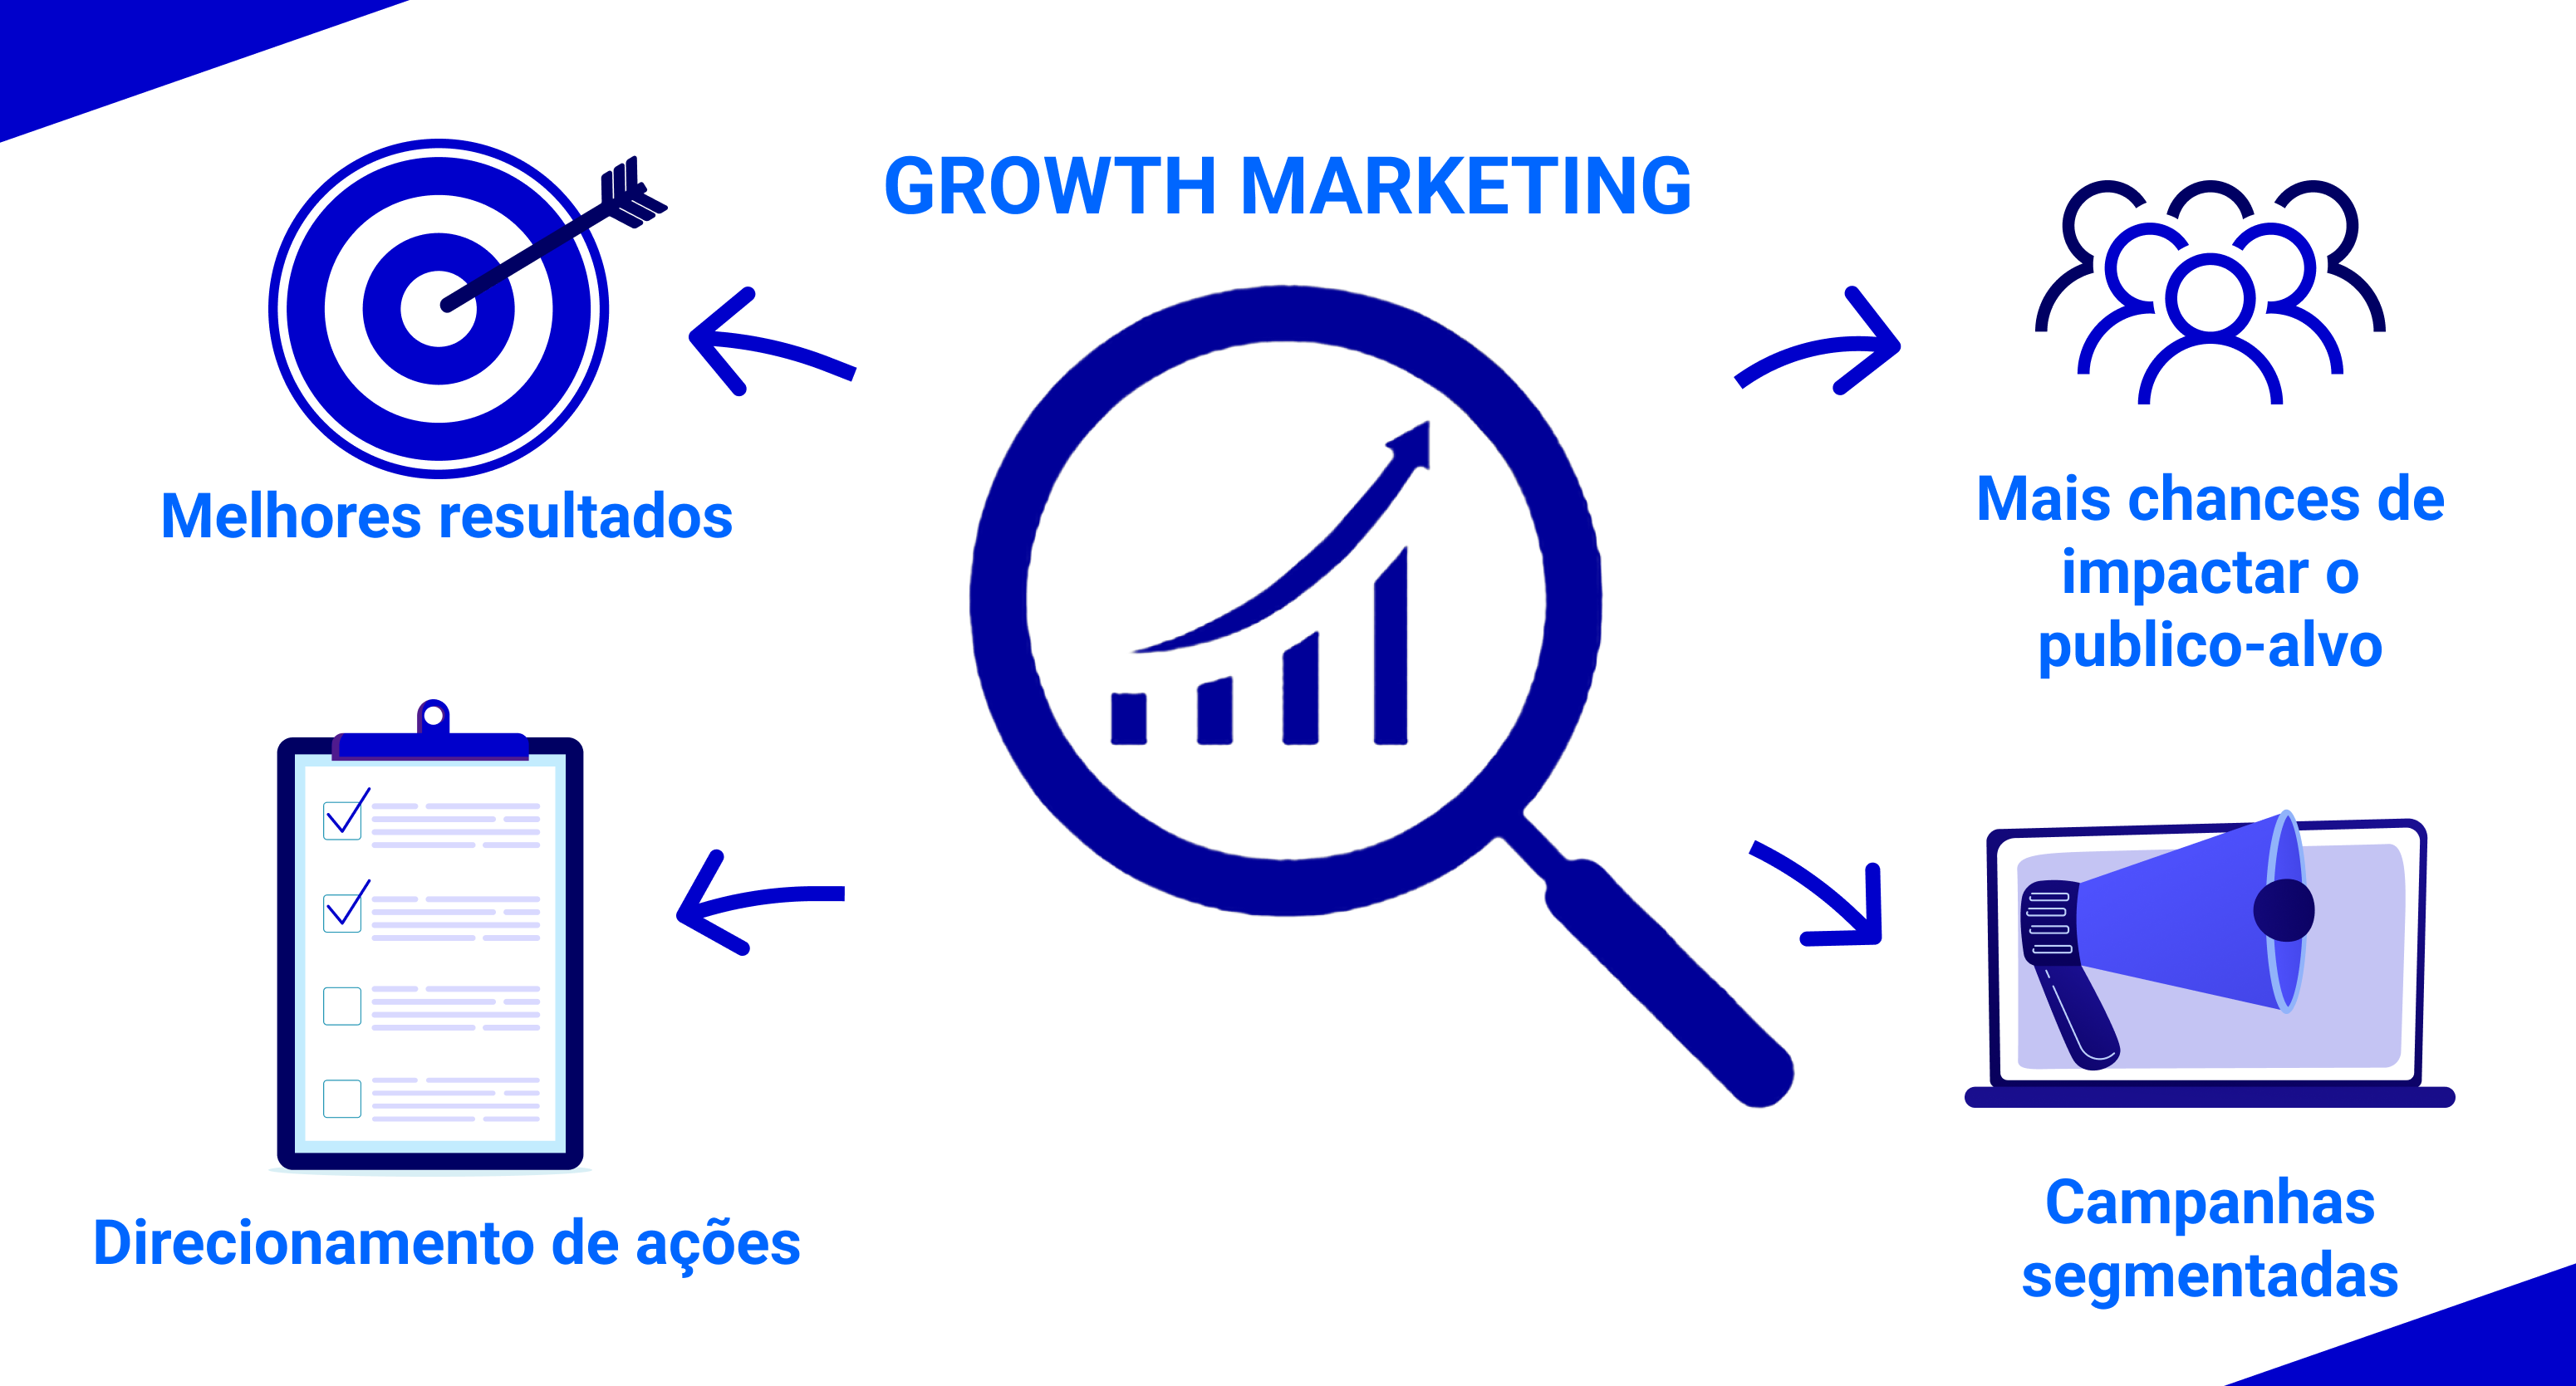 Principais características do growth marketing: melhores resultados, direcionamento de ações, mais chances de impactar o público-alvo e campanhas segmentadas.